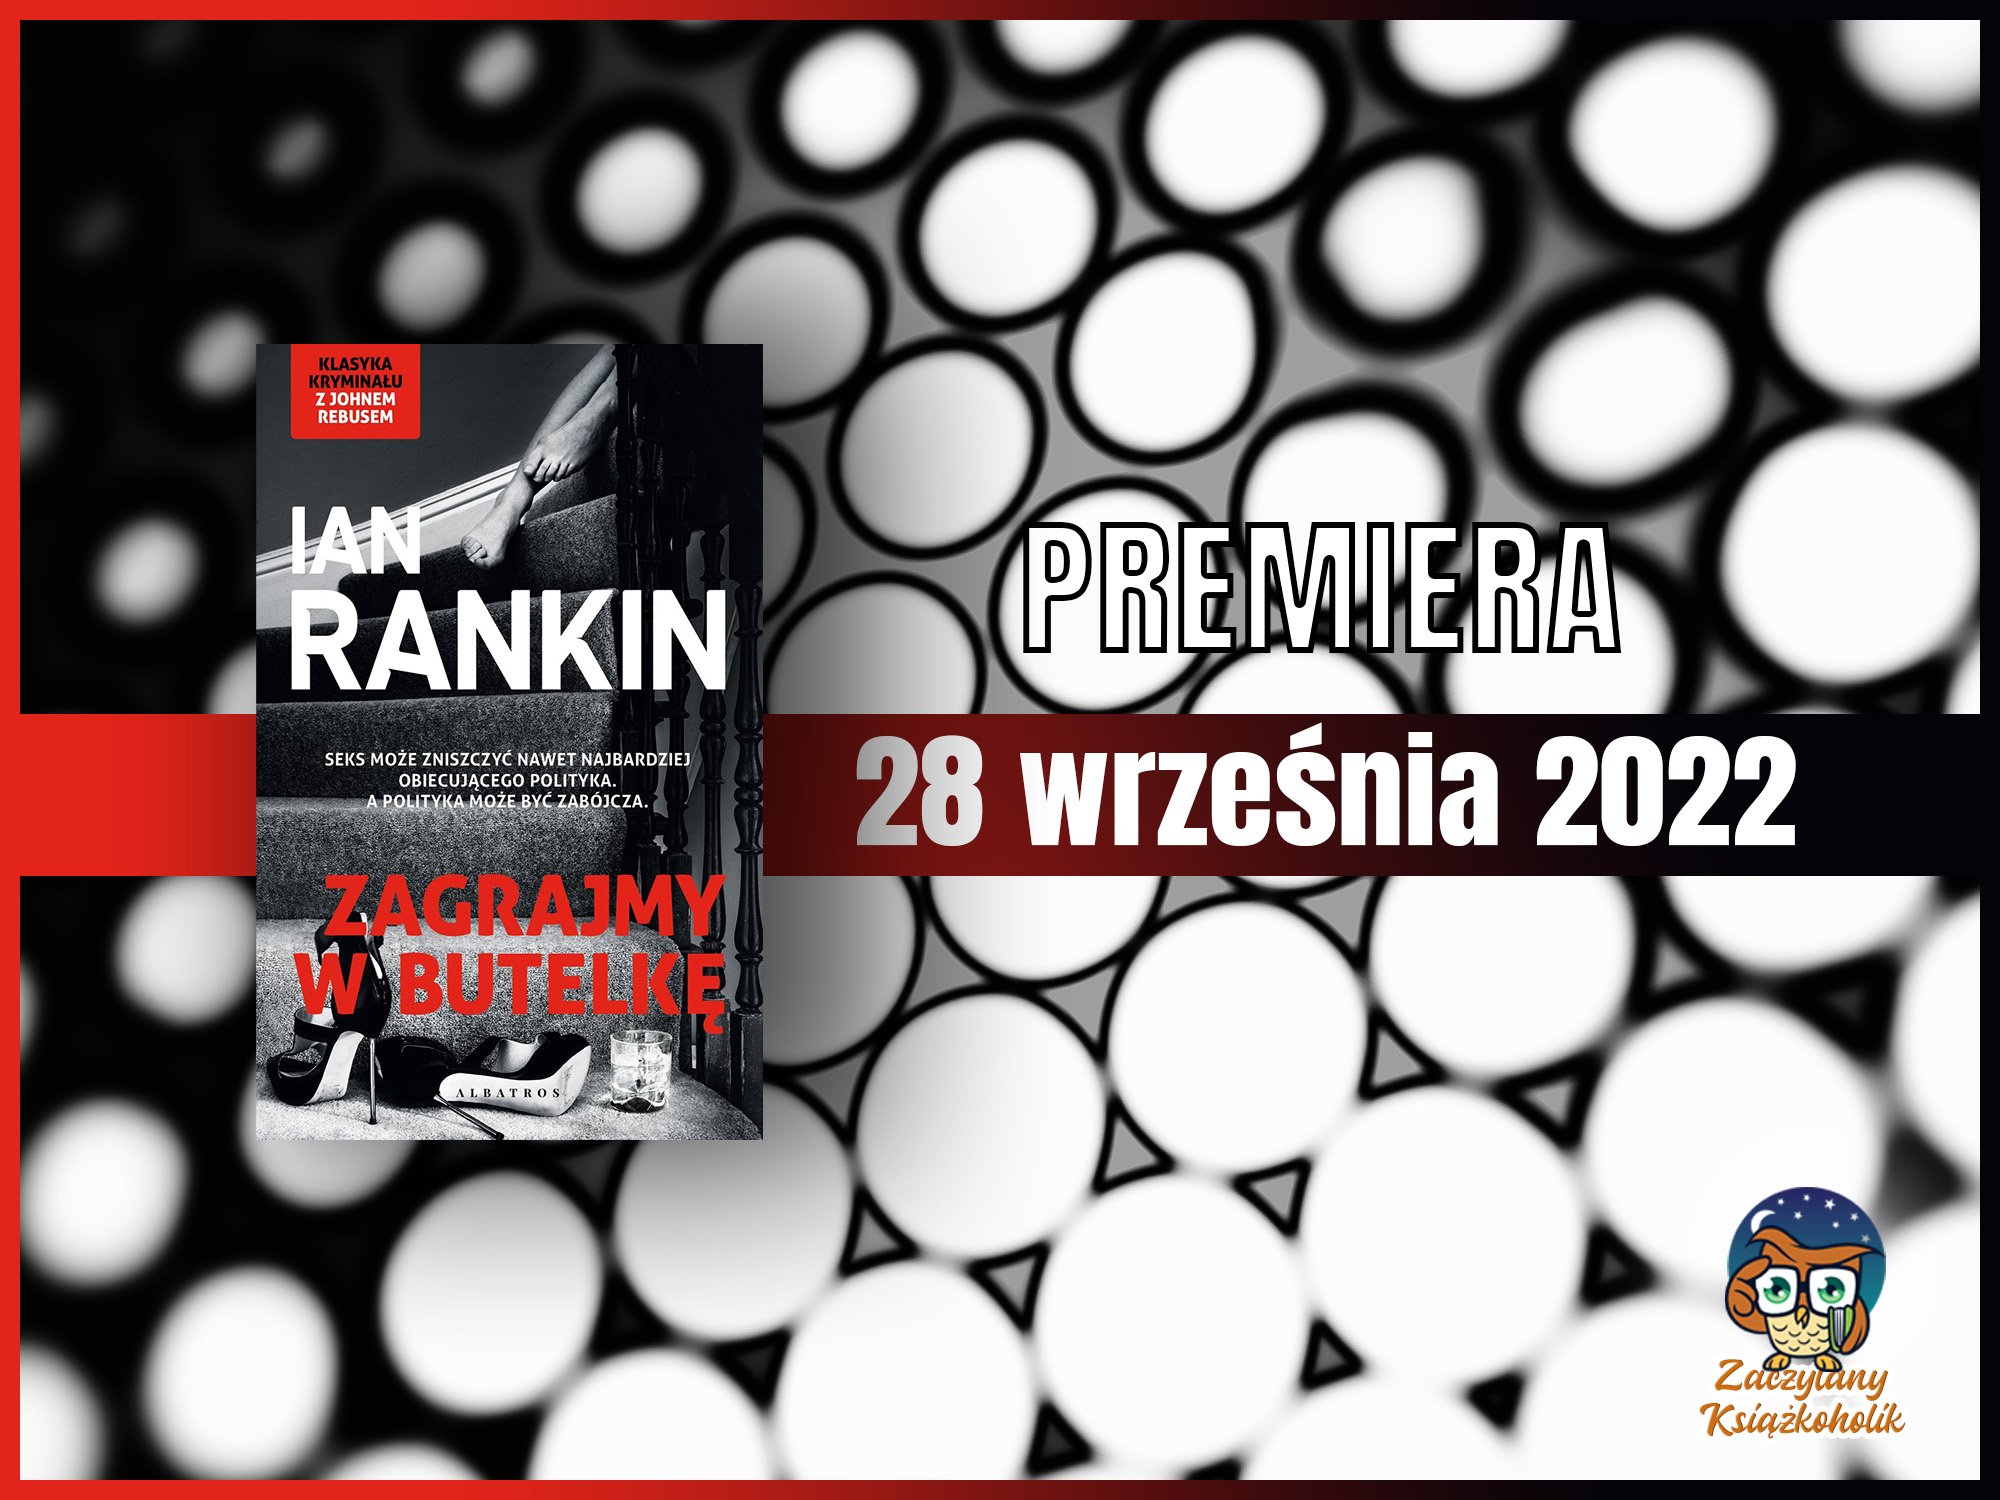 Zagrajmy w butelkę-Ian Rankin-zaczytanyksiazkoholik.pl